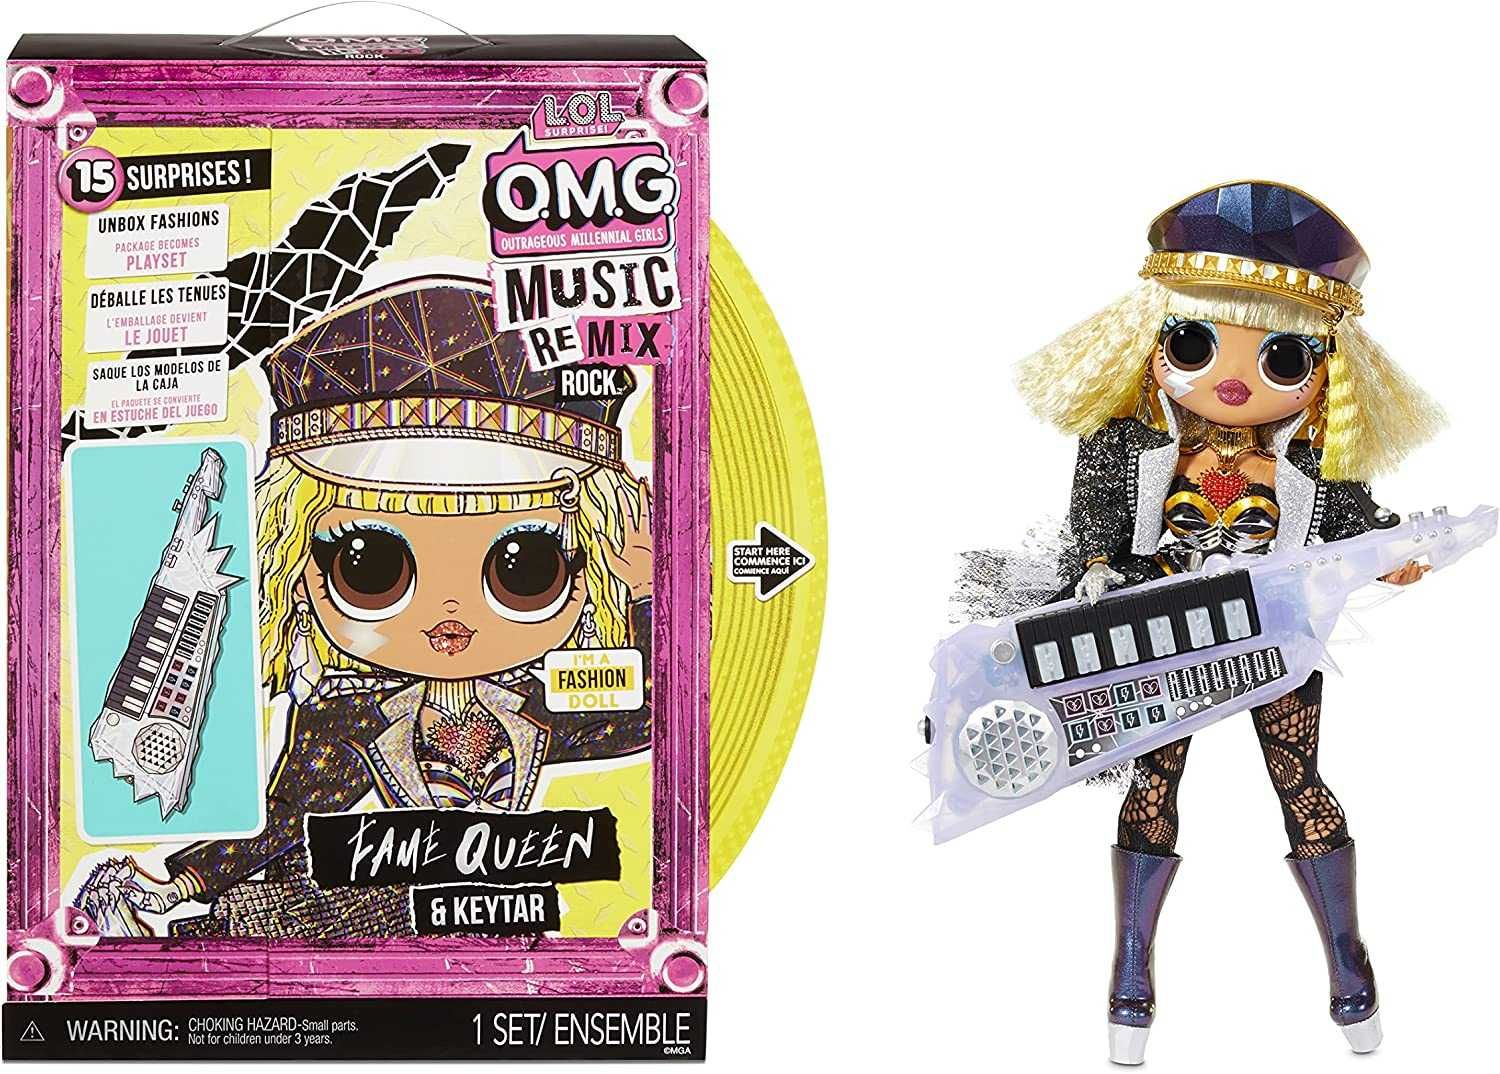 Кукла лол игровой набор LOL OMG Remix Rock Fame Queen Оригинал 28см